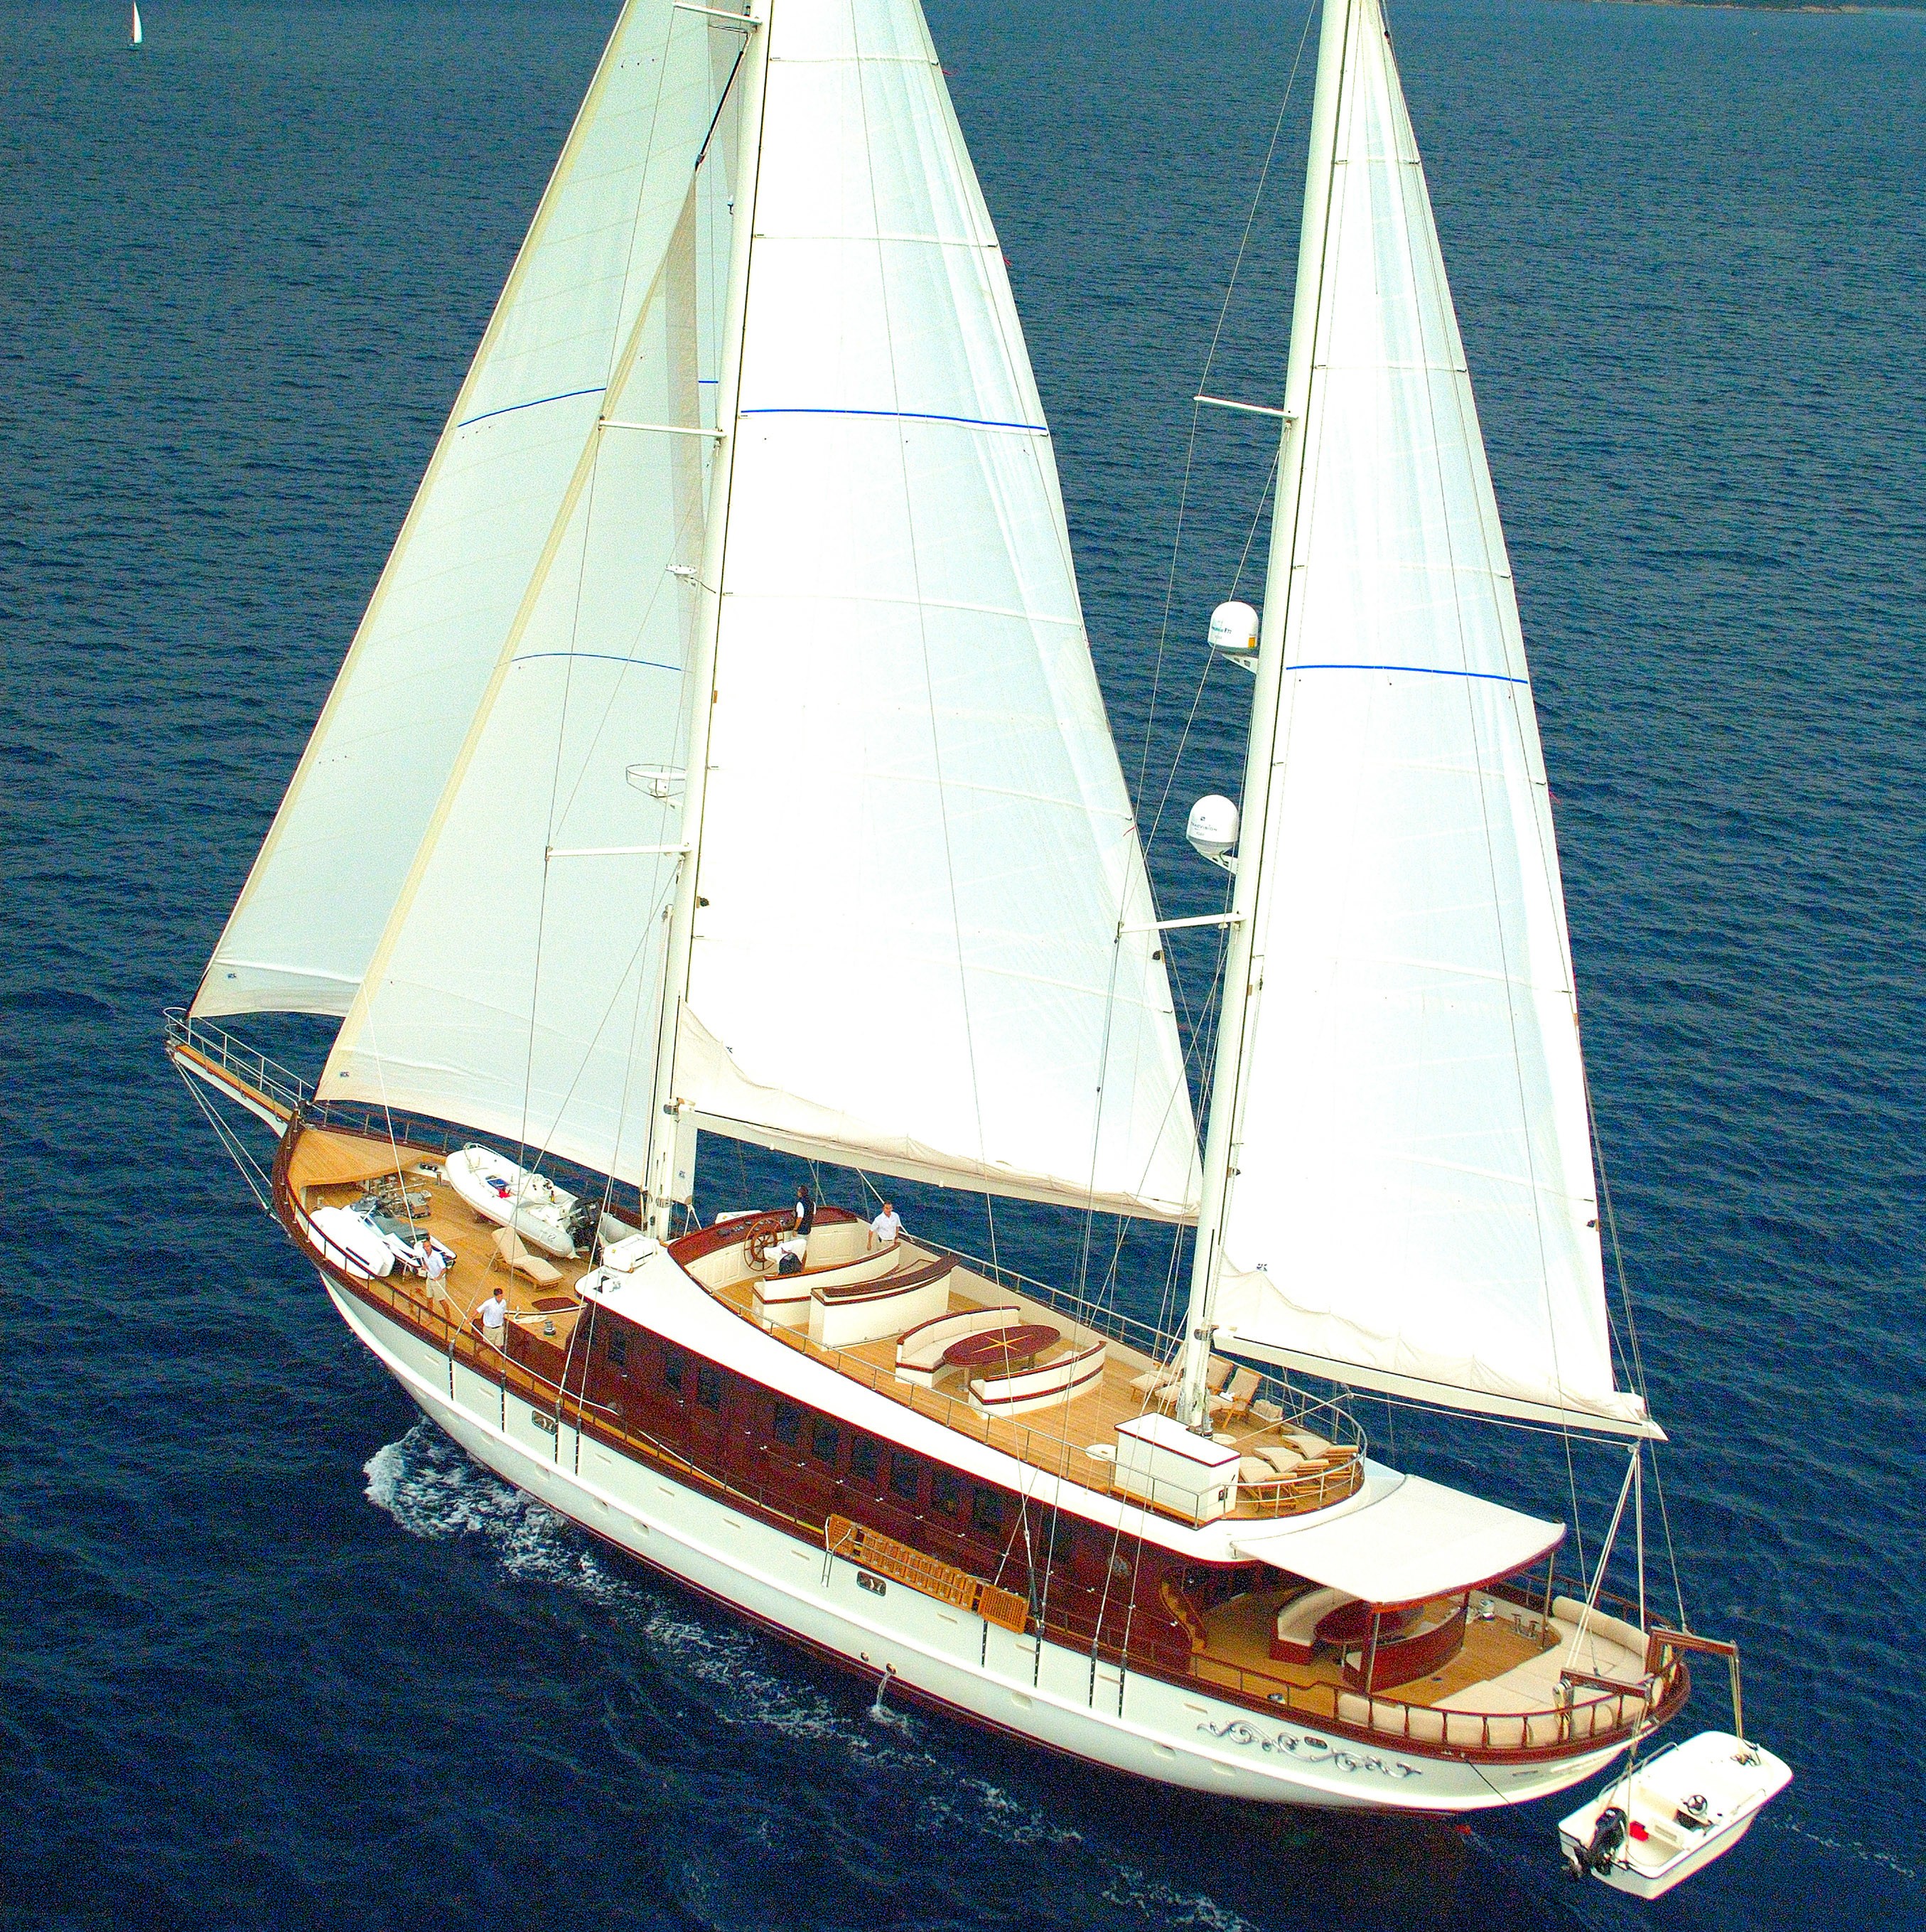 The 41m Yacht RIANA